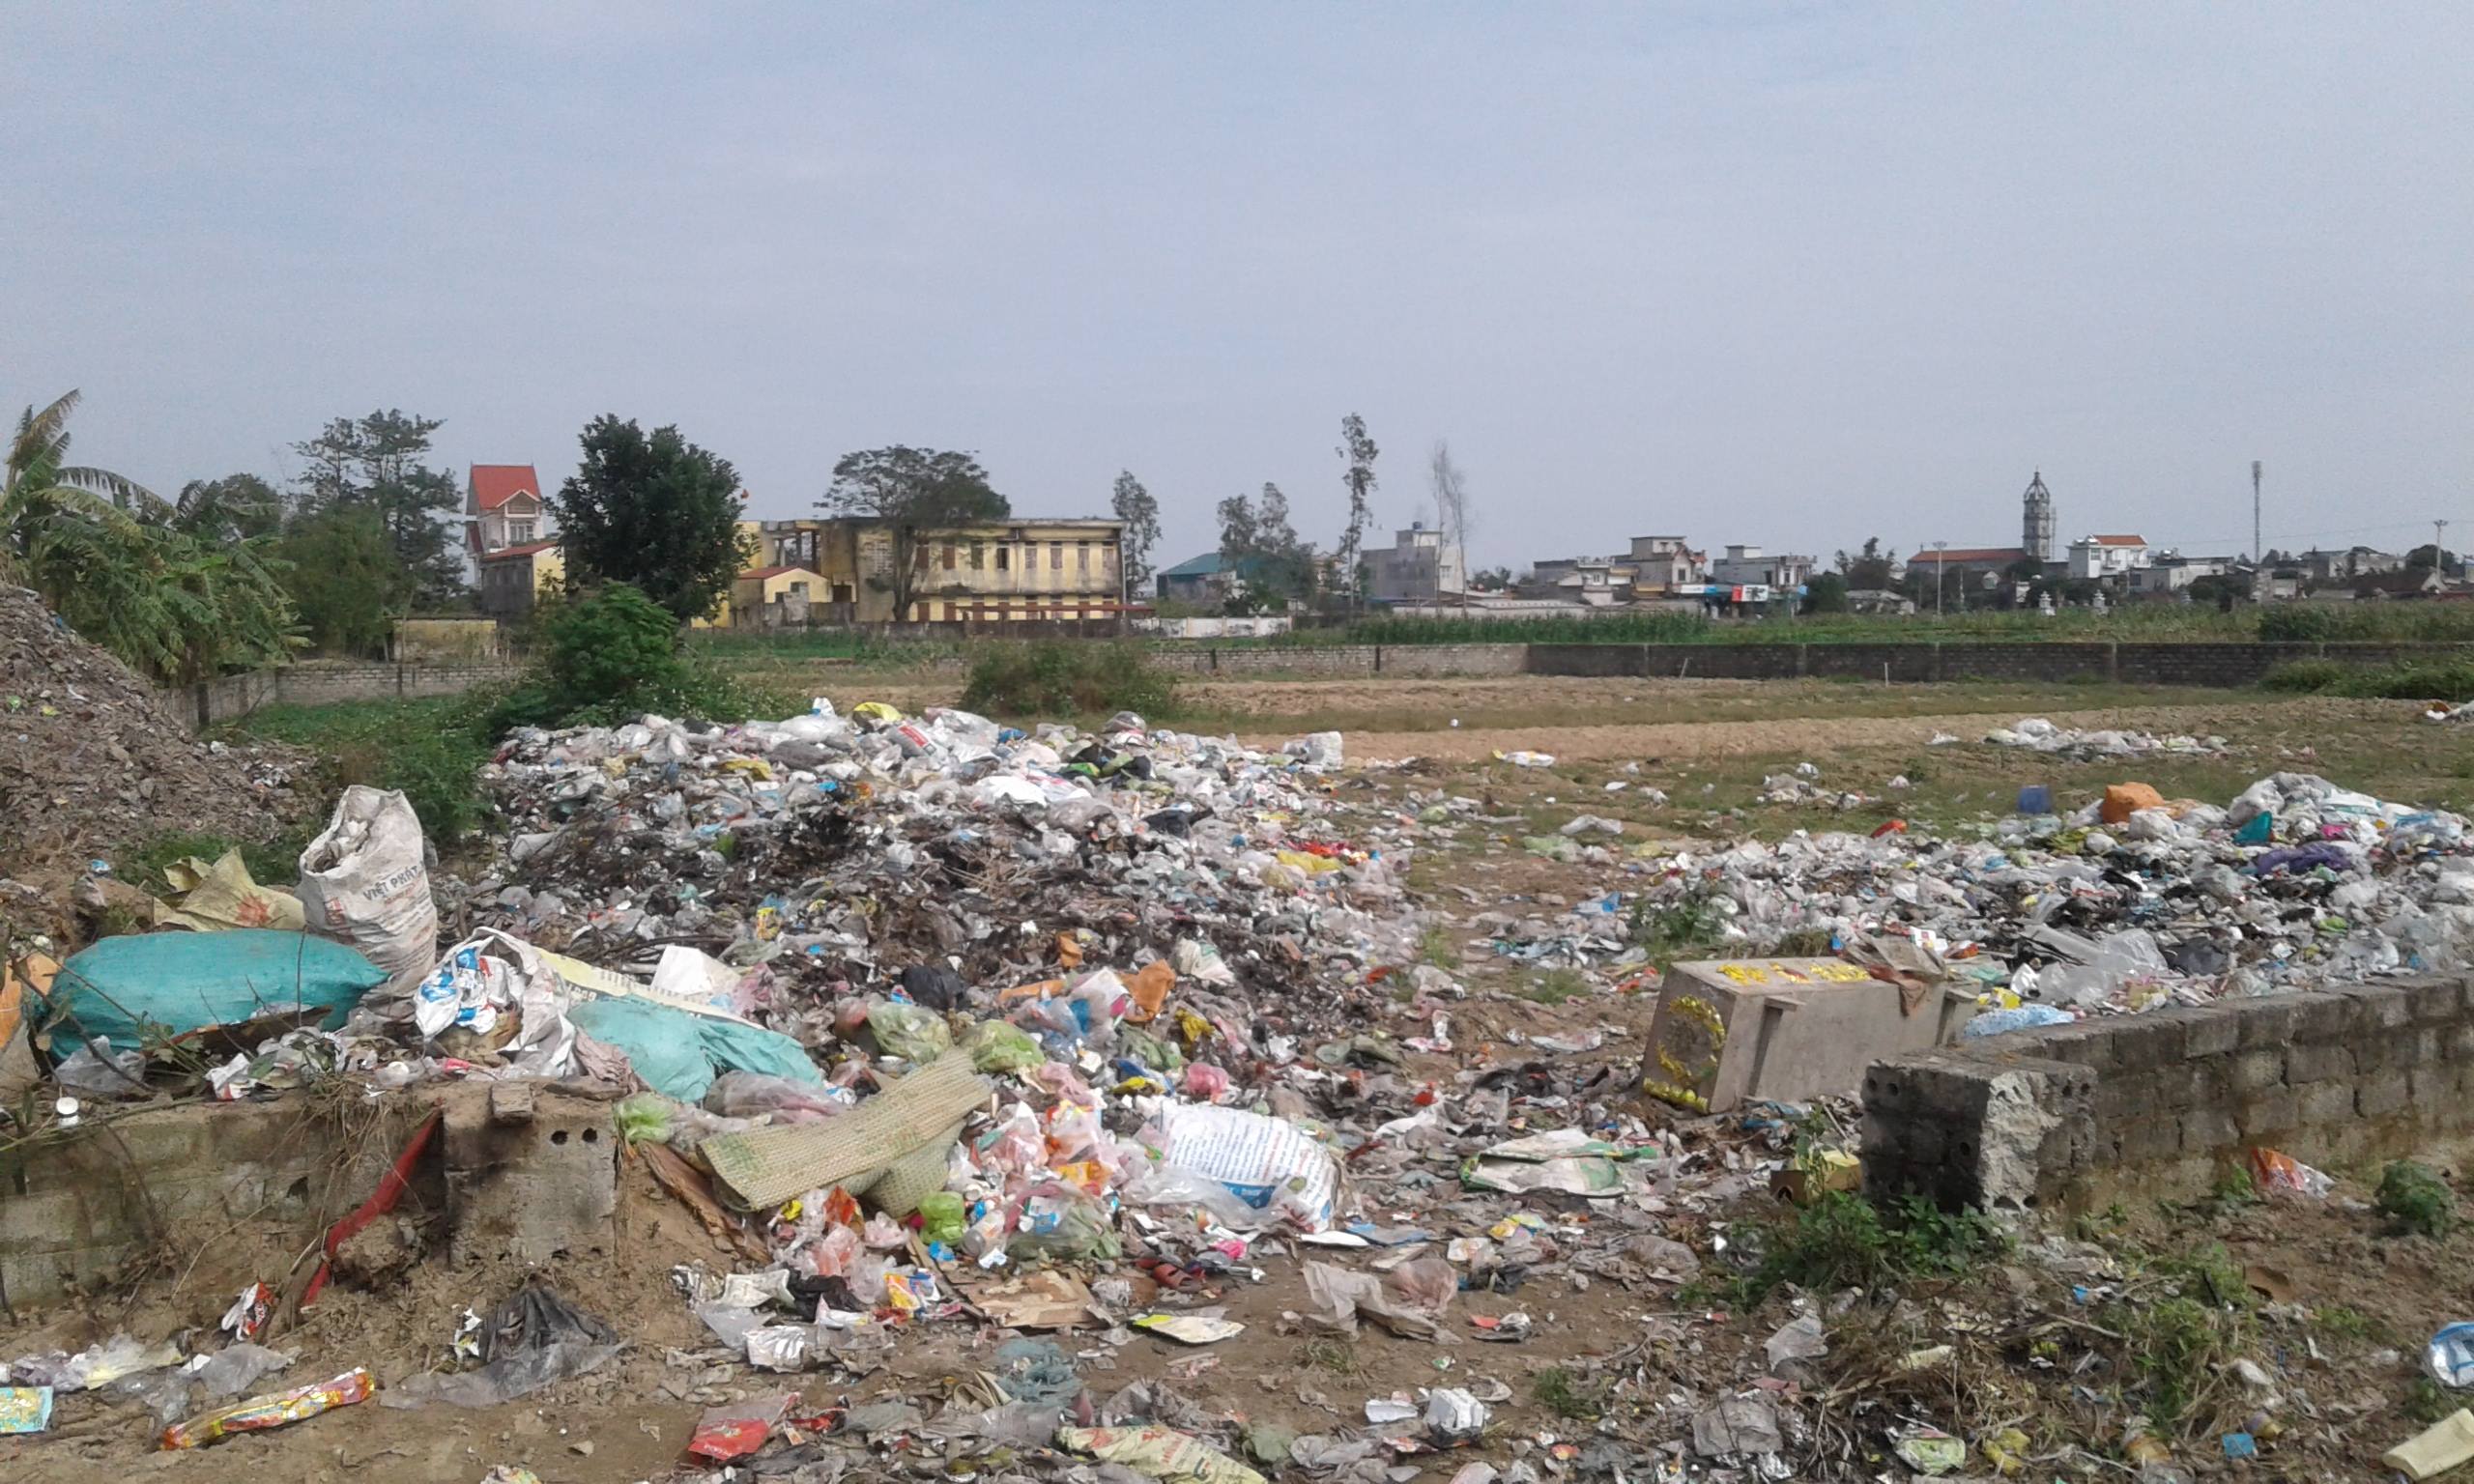 Nam Định: Thành lập dự án khu xử lý rác thải cách trường tiểu học 200m